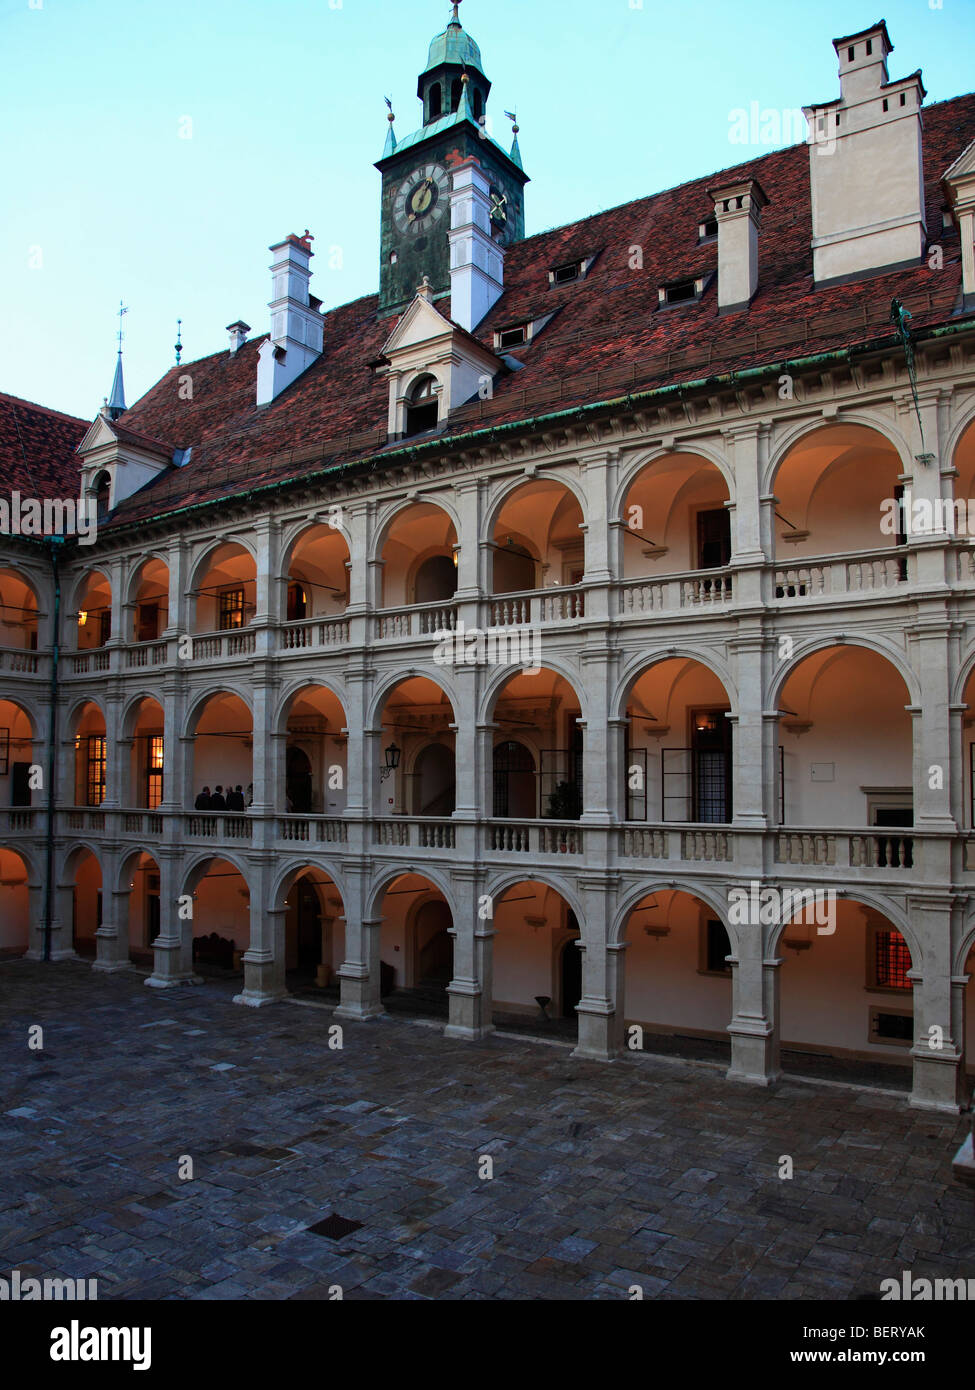 Austria, Graz, Landhaus, courtyard Stock Photo